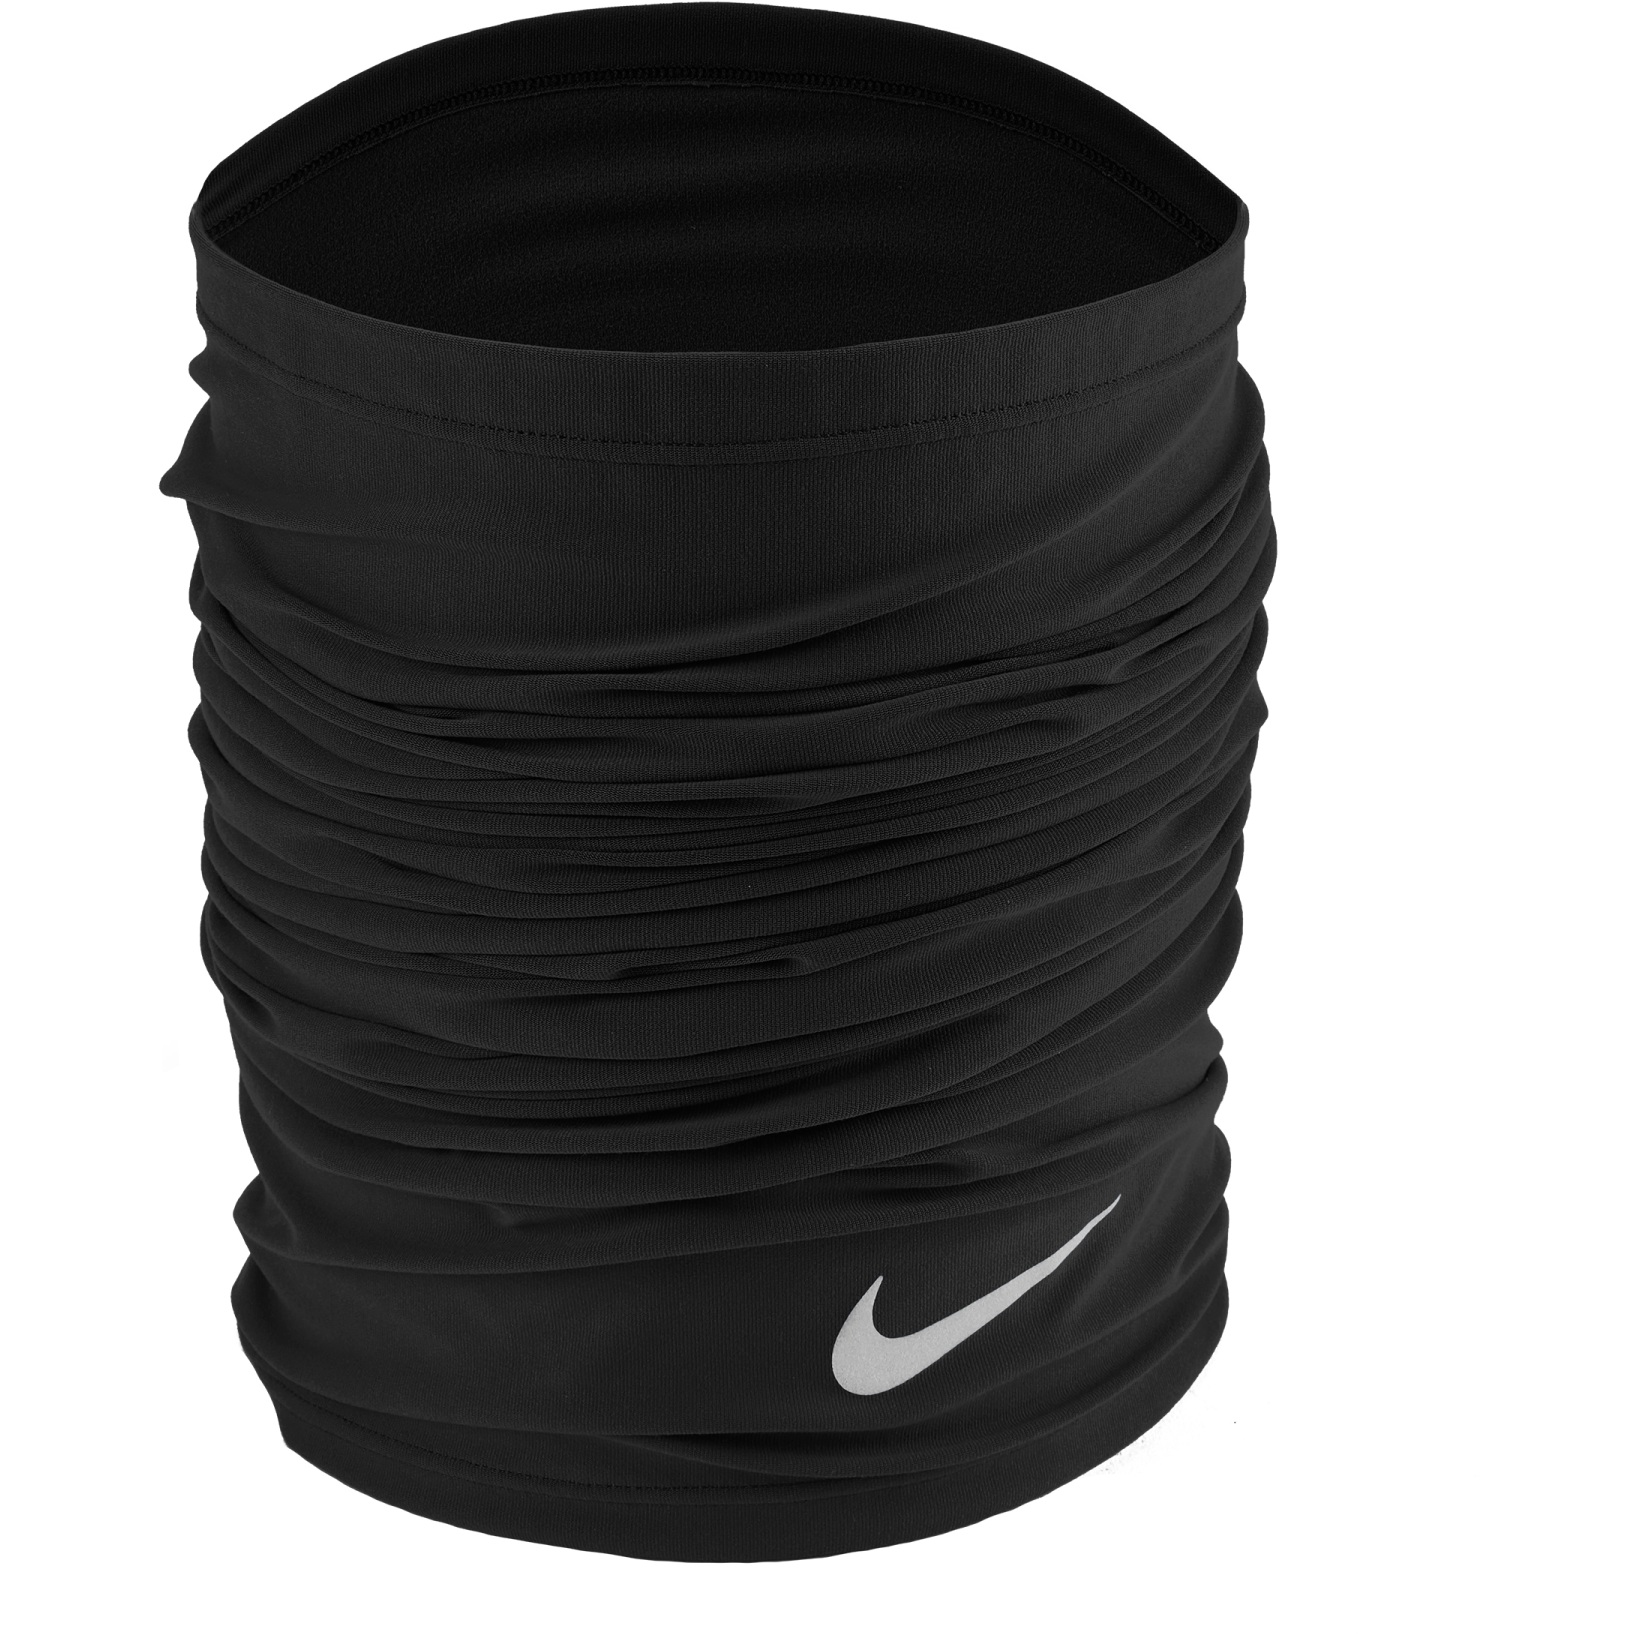 Immagine prodotto da Nike Dri-Fit Wrap 2.0 - Sciarpa Multifunzionale - nero/argento 042